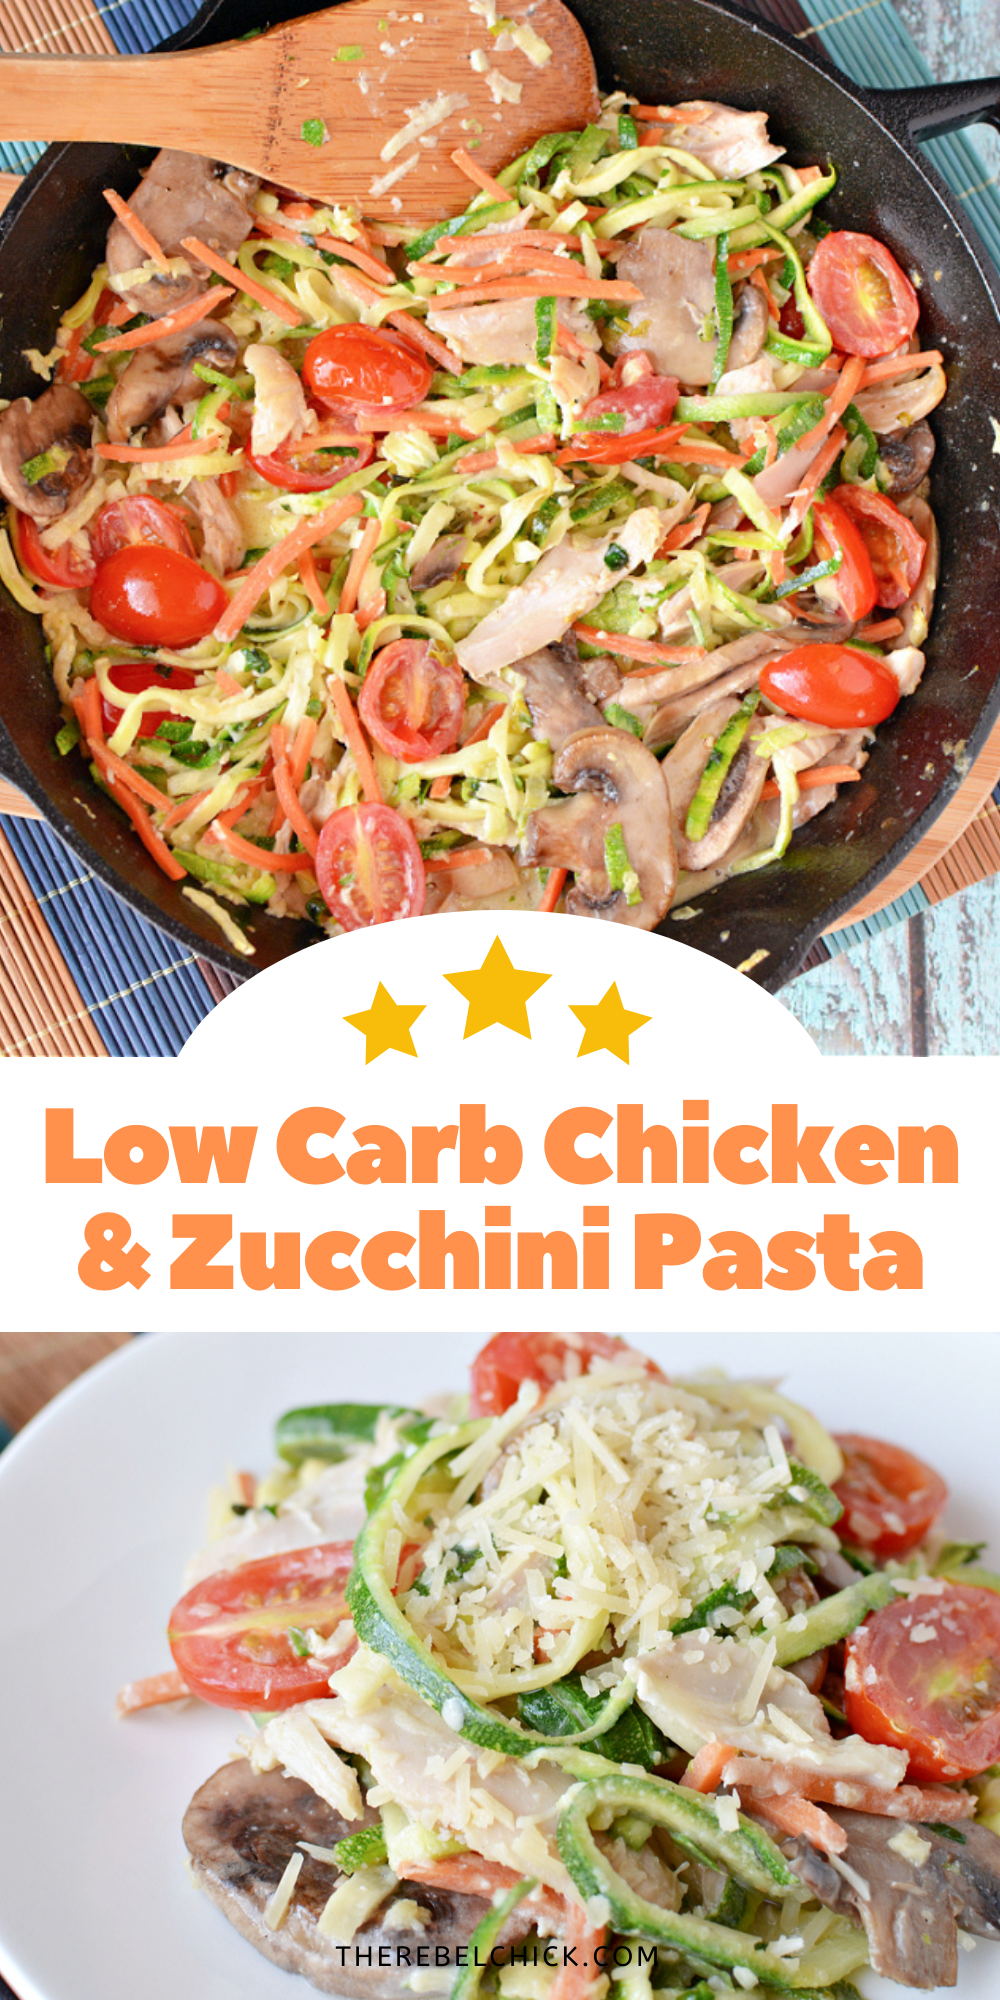 Low Carb Creamy Chicken & Zucchini Pasta Recipe